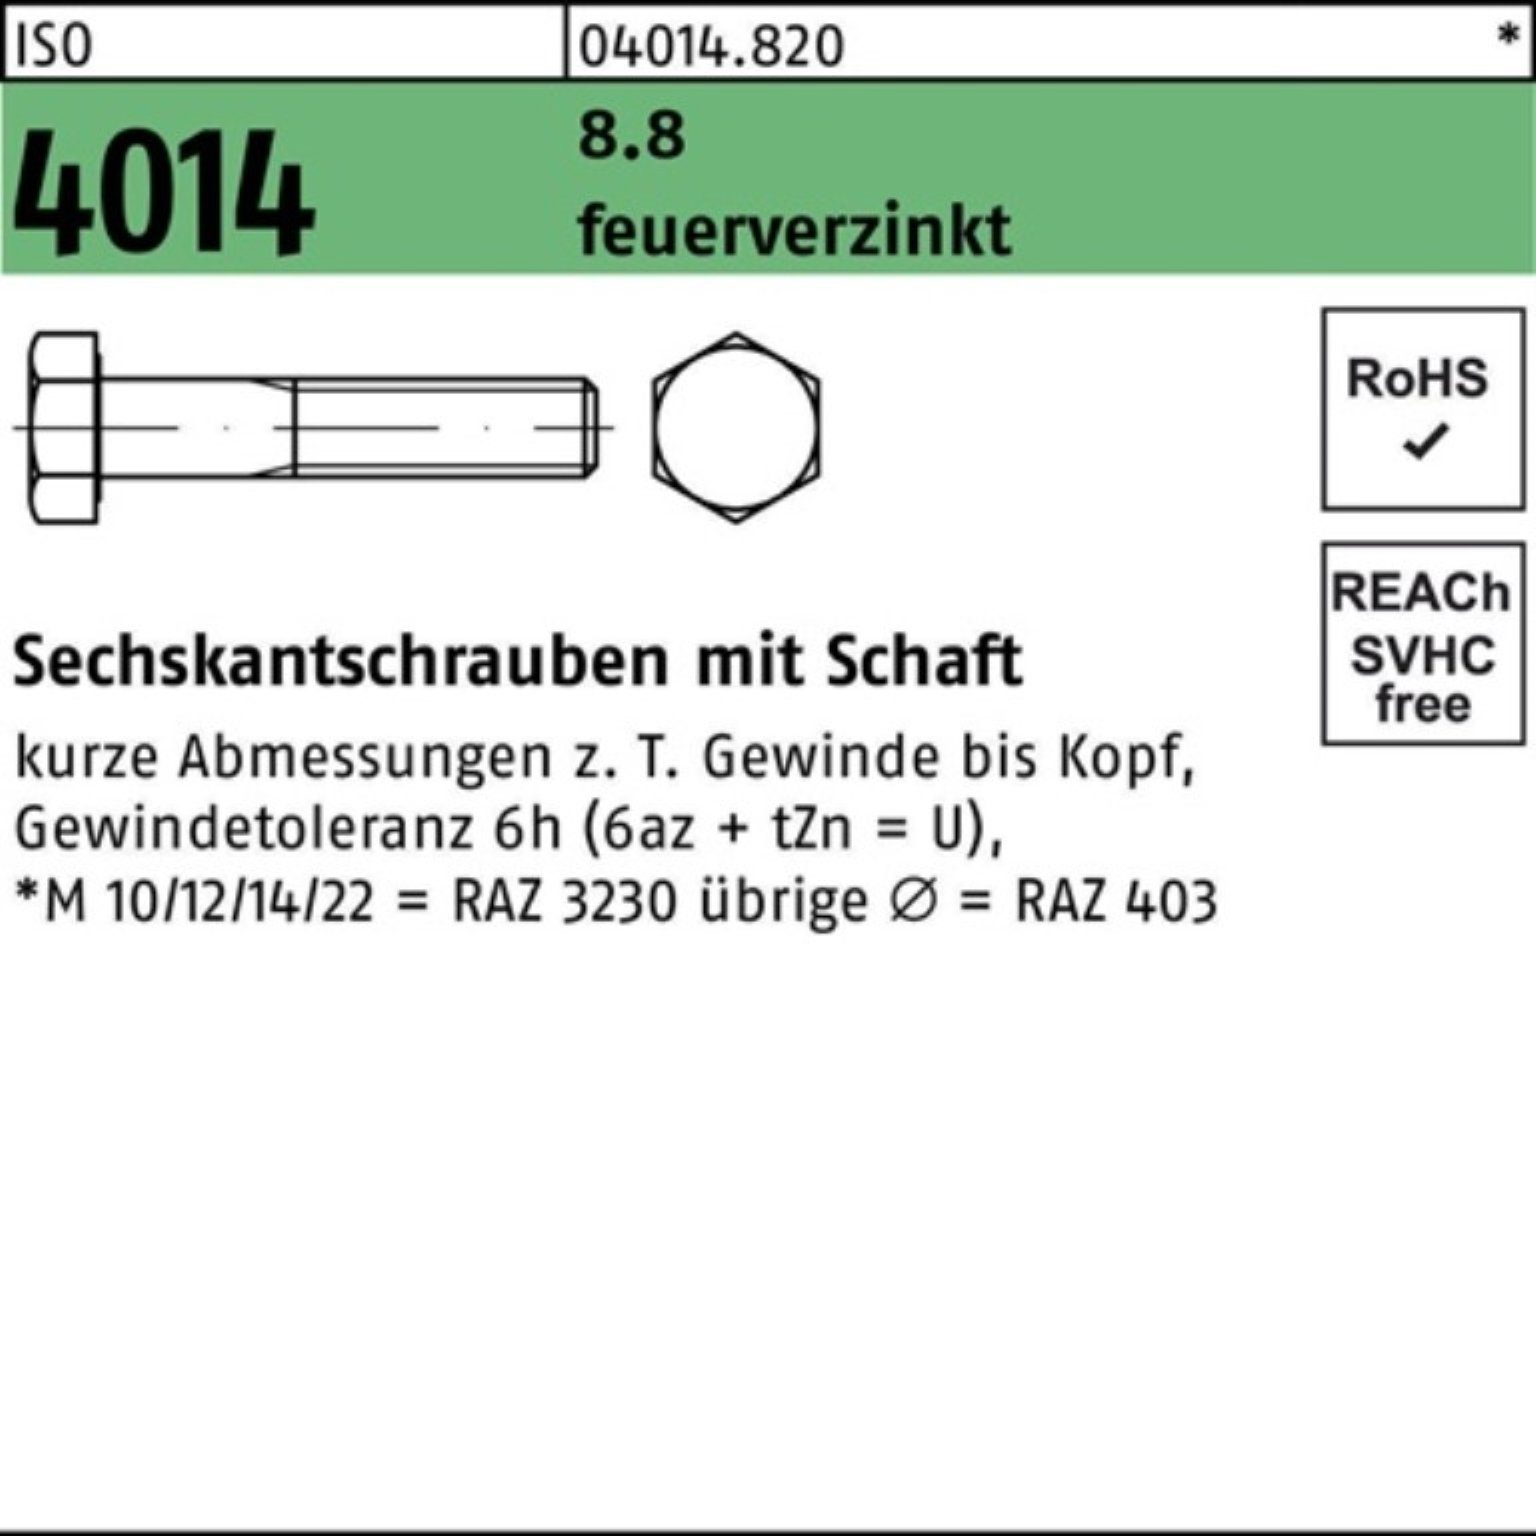 Bufab Sechskantschraube 200er Pack Sechskantschraube ISO 4014 Schaft M8x 50 8.8 feuerverz. 200